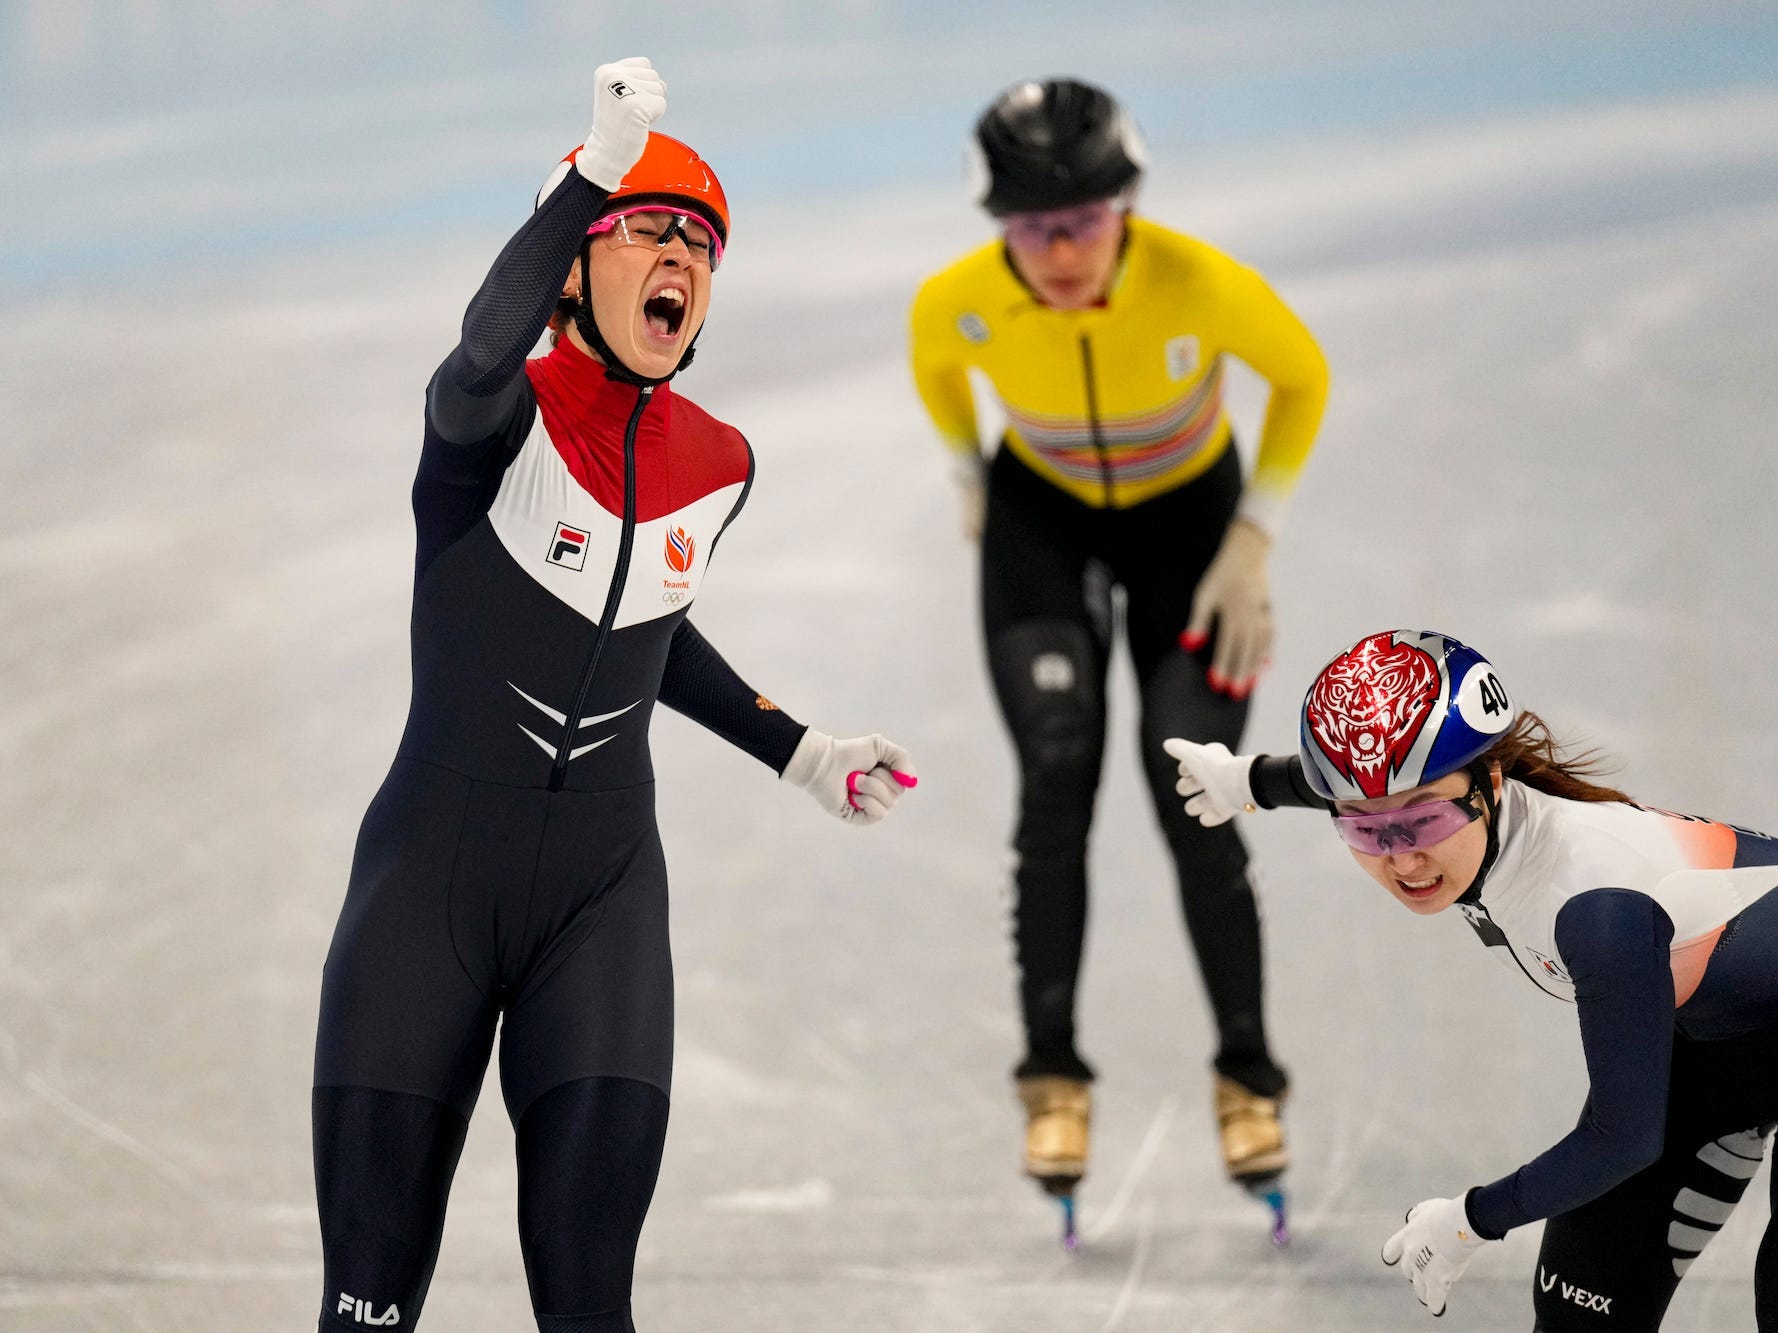 Suzanne Schulting vom Team Niederlande feiert, während sie vor zwei anderen Skatern ins Ziel kommt.